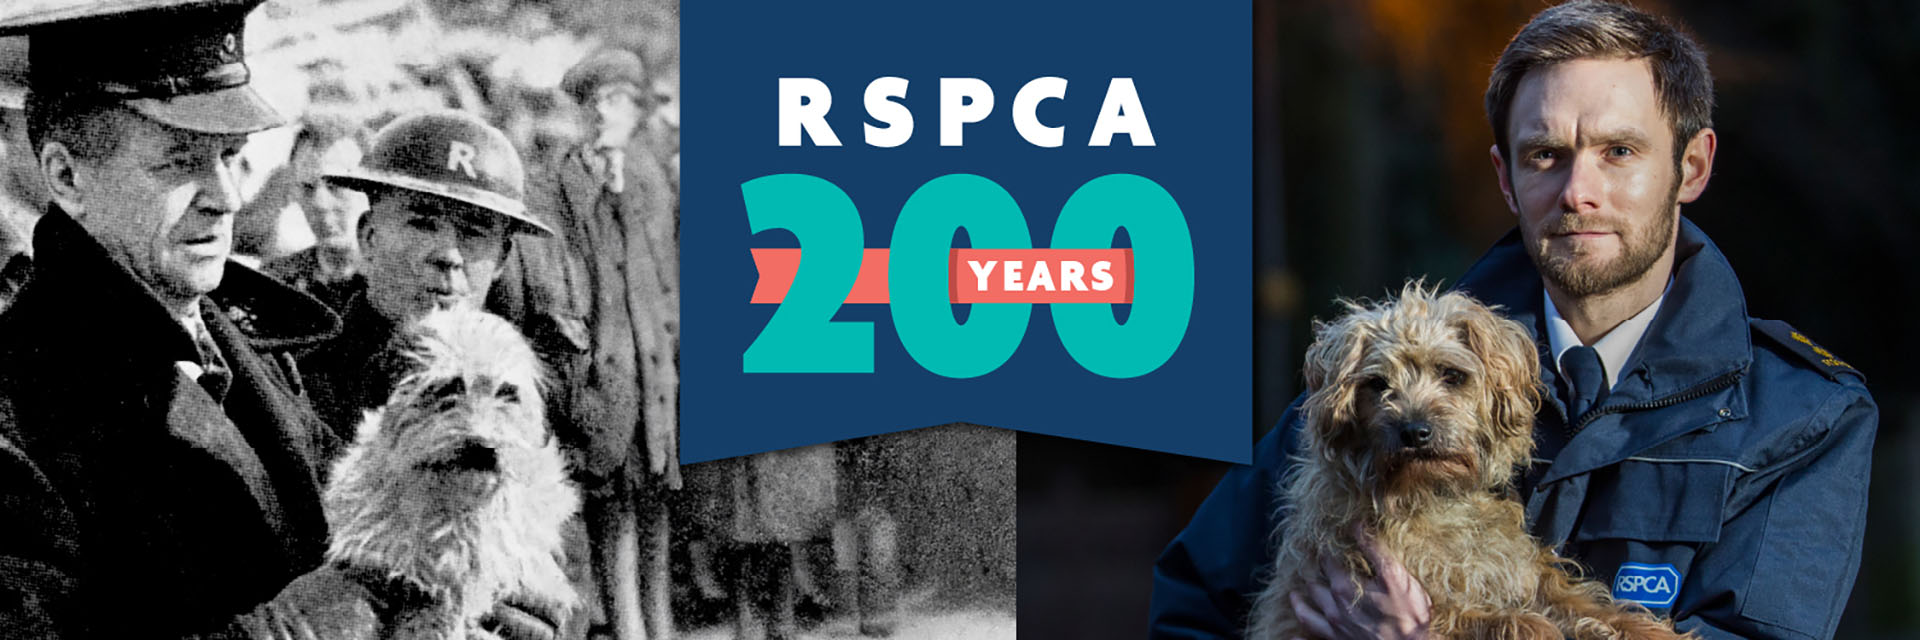 RSPCA 200 Years